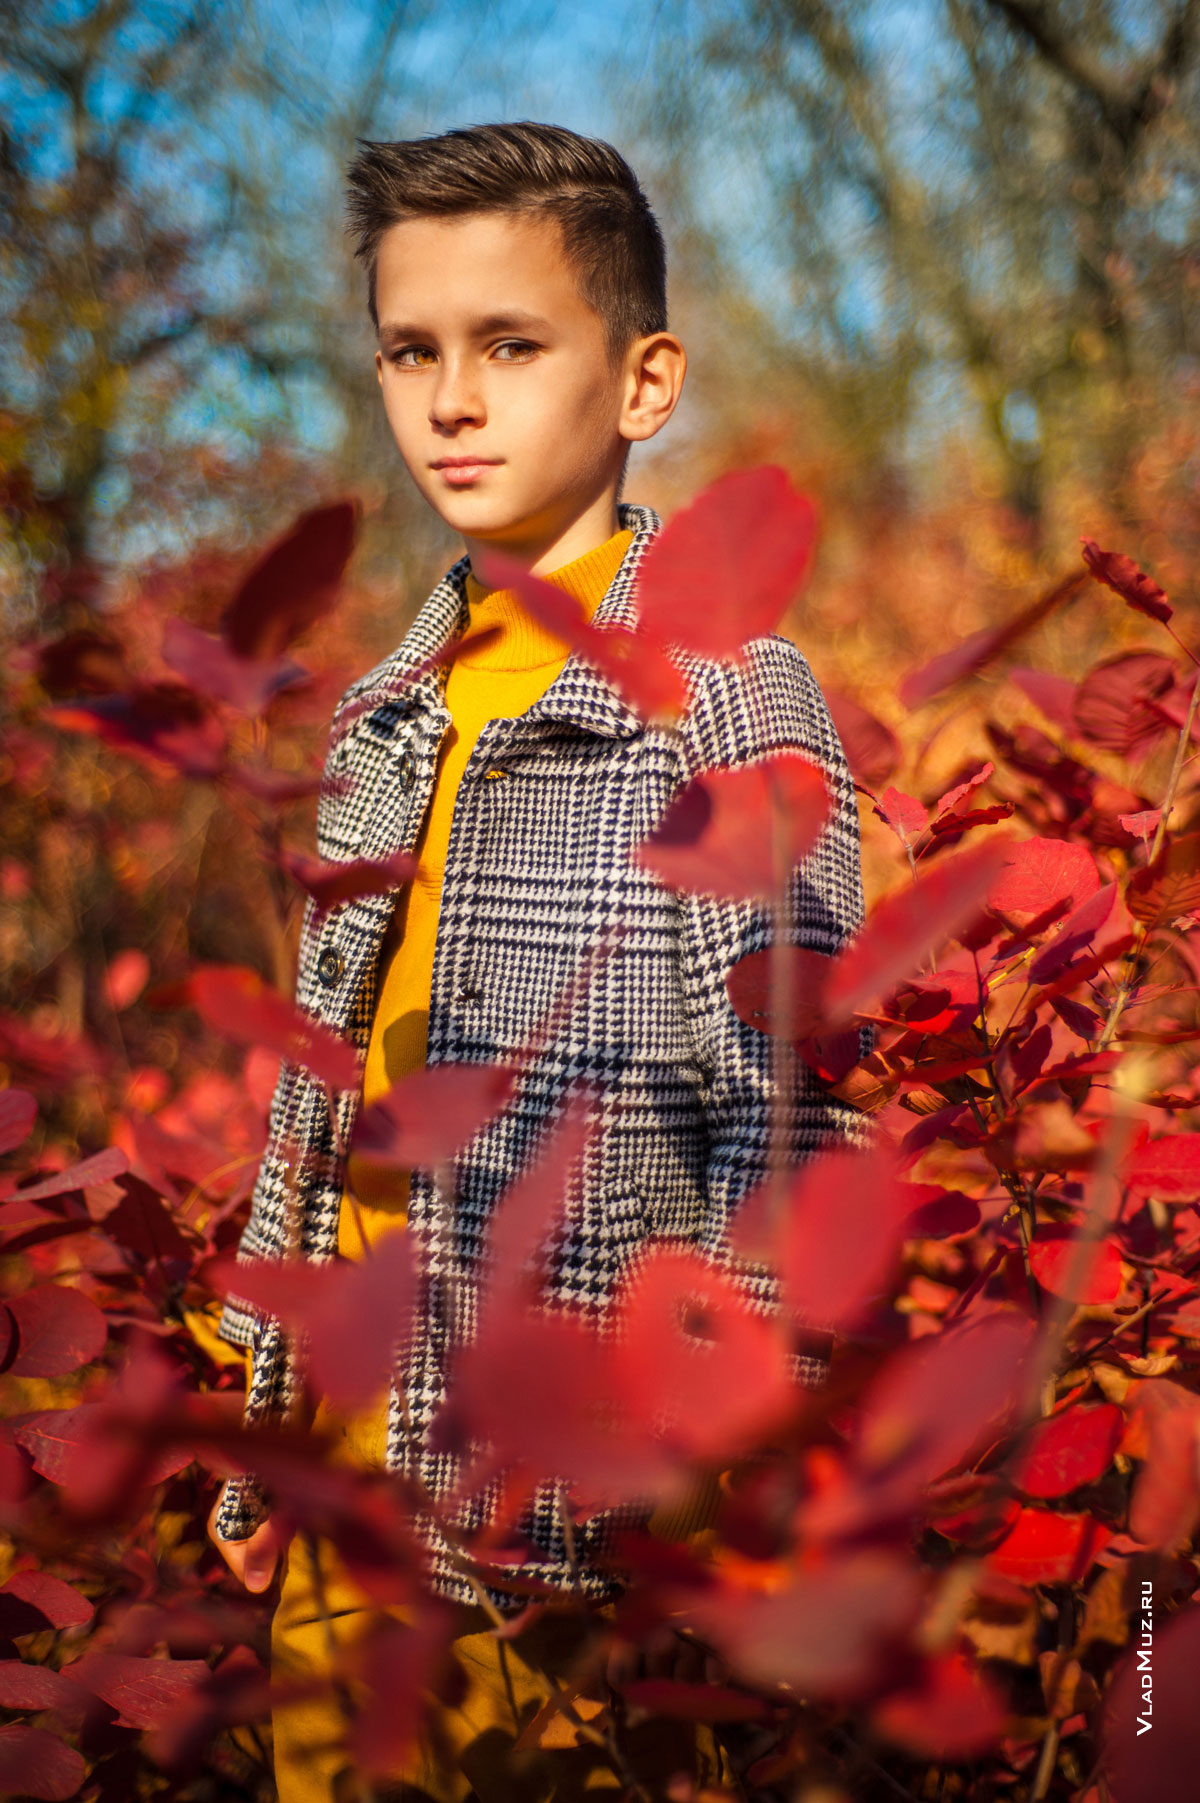 Осенний детский фотопортрет мальчика на фоне кустов из красных листьев